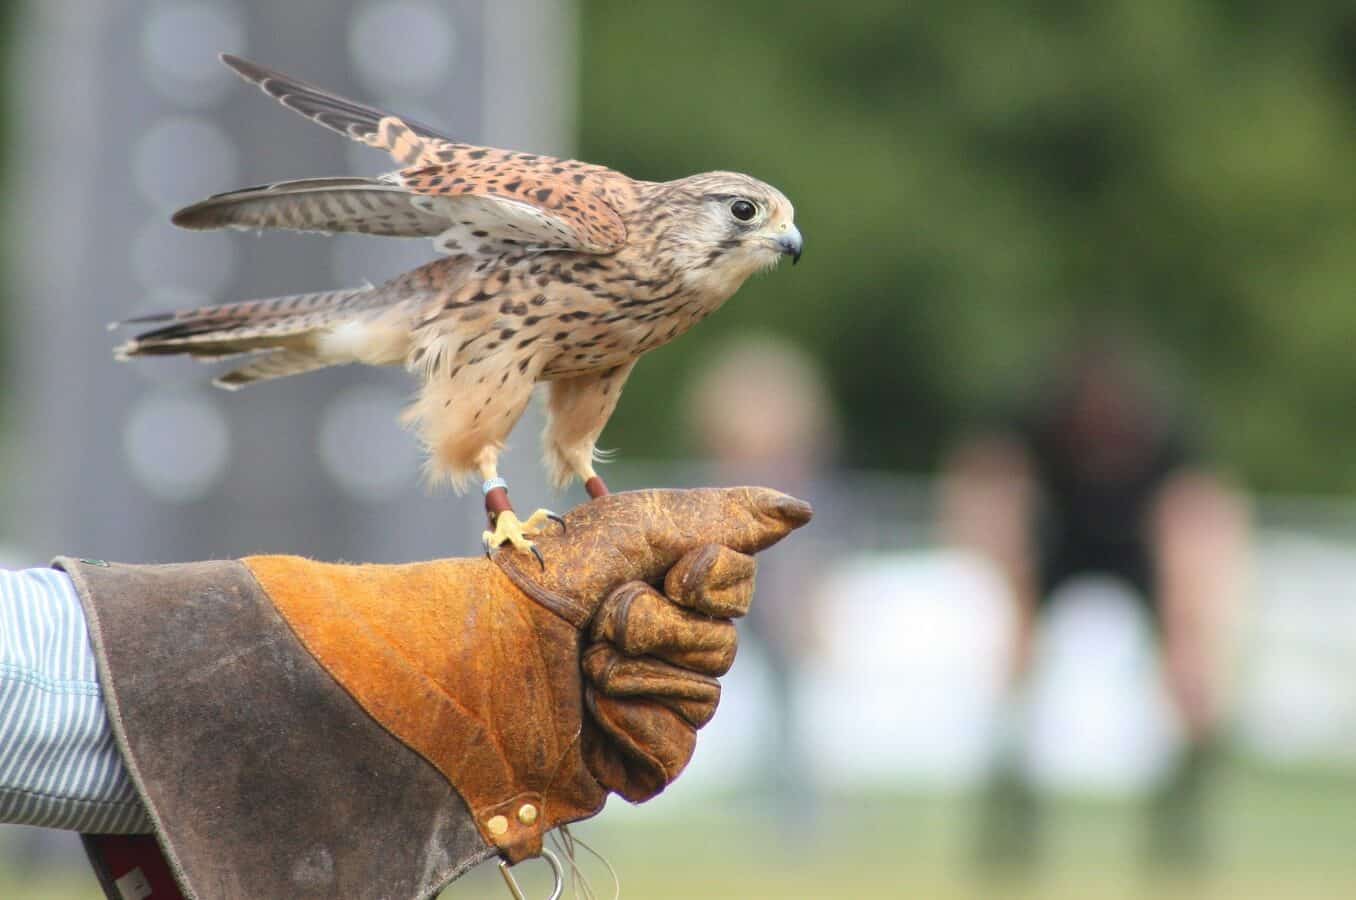 falcon perch in human's hand